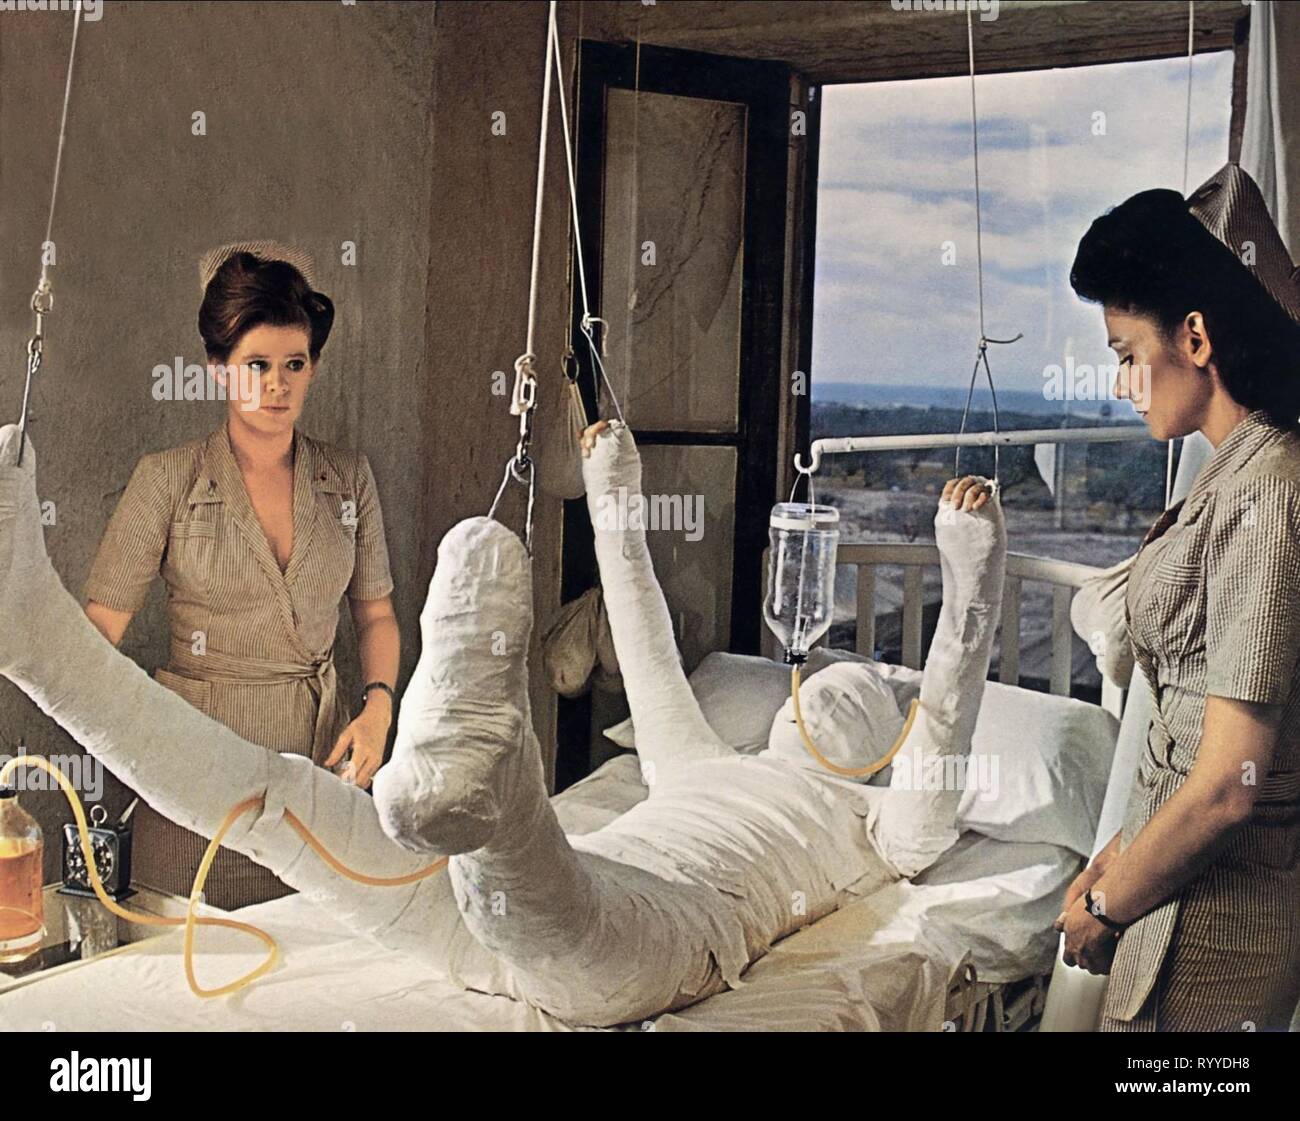 el-hombre-vendado-en-el-hospital-catch-22-1970-ryydh8.jpg